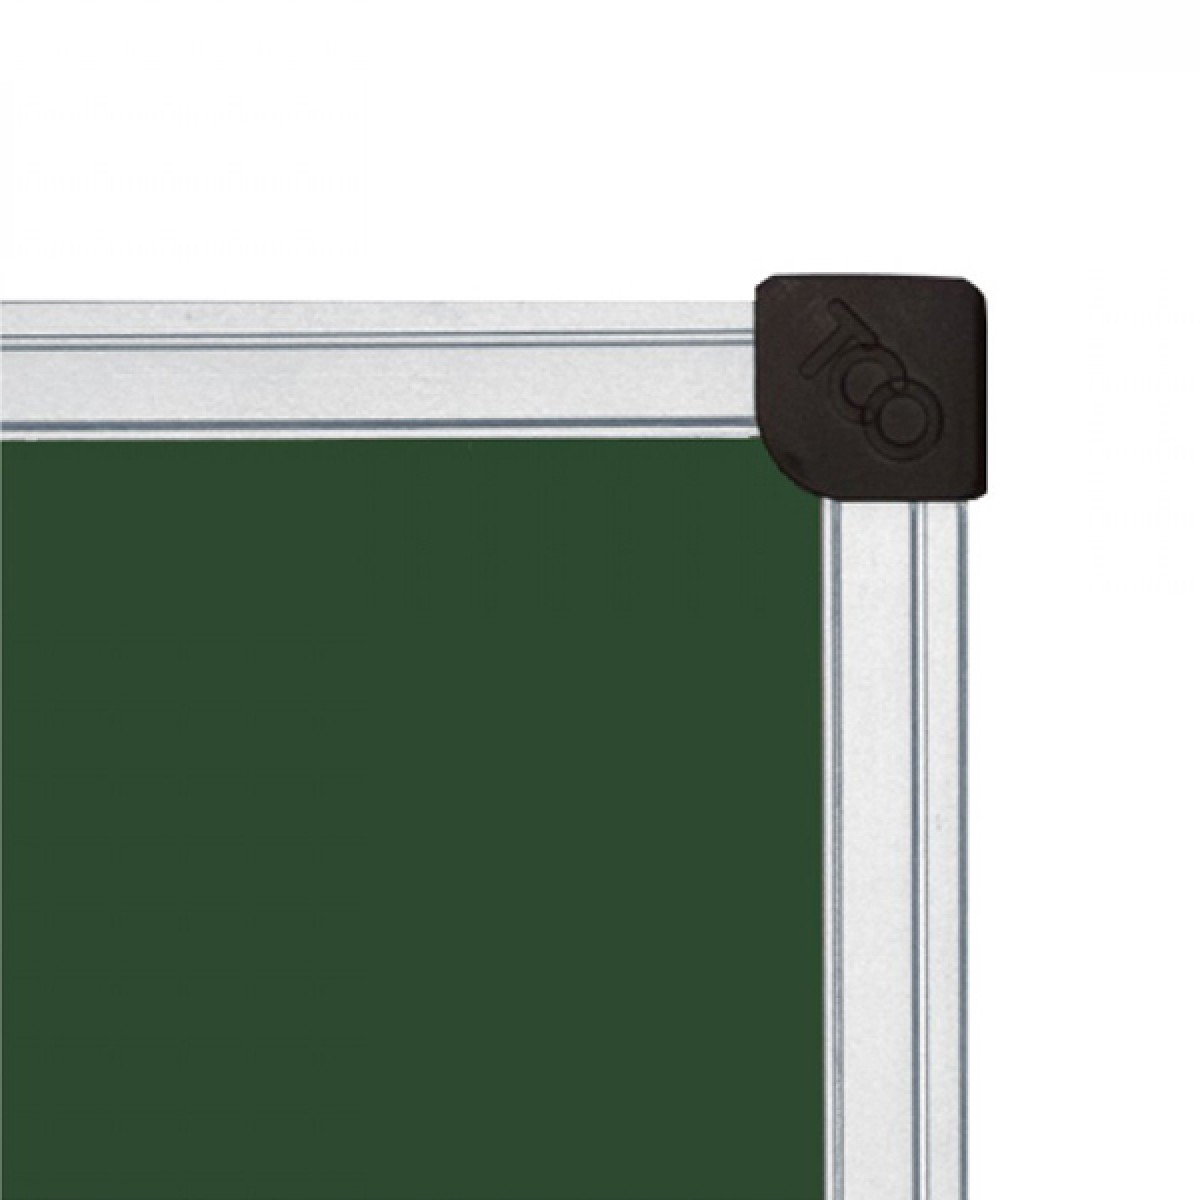 Chalkboard 4000*1000 mm, "Standard", 7-surfaces